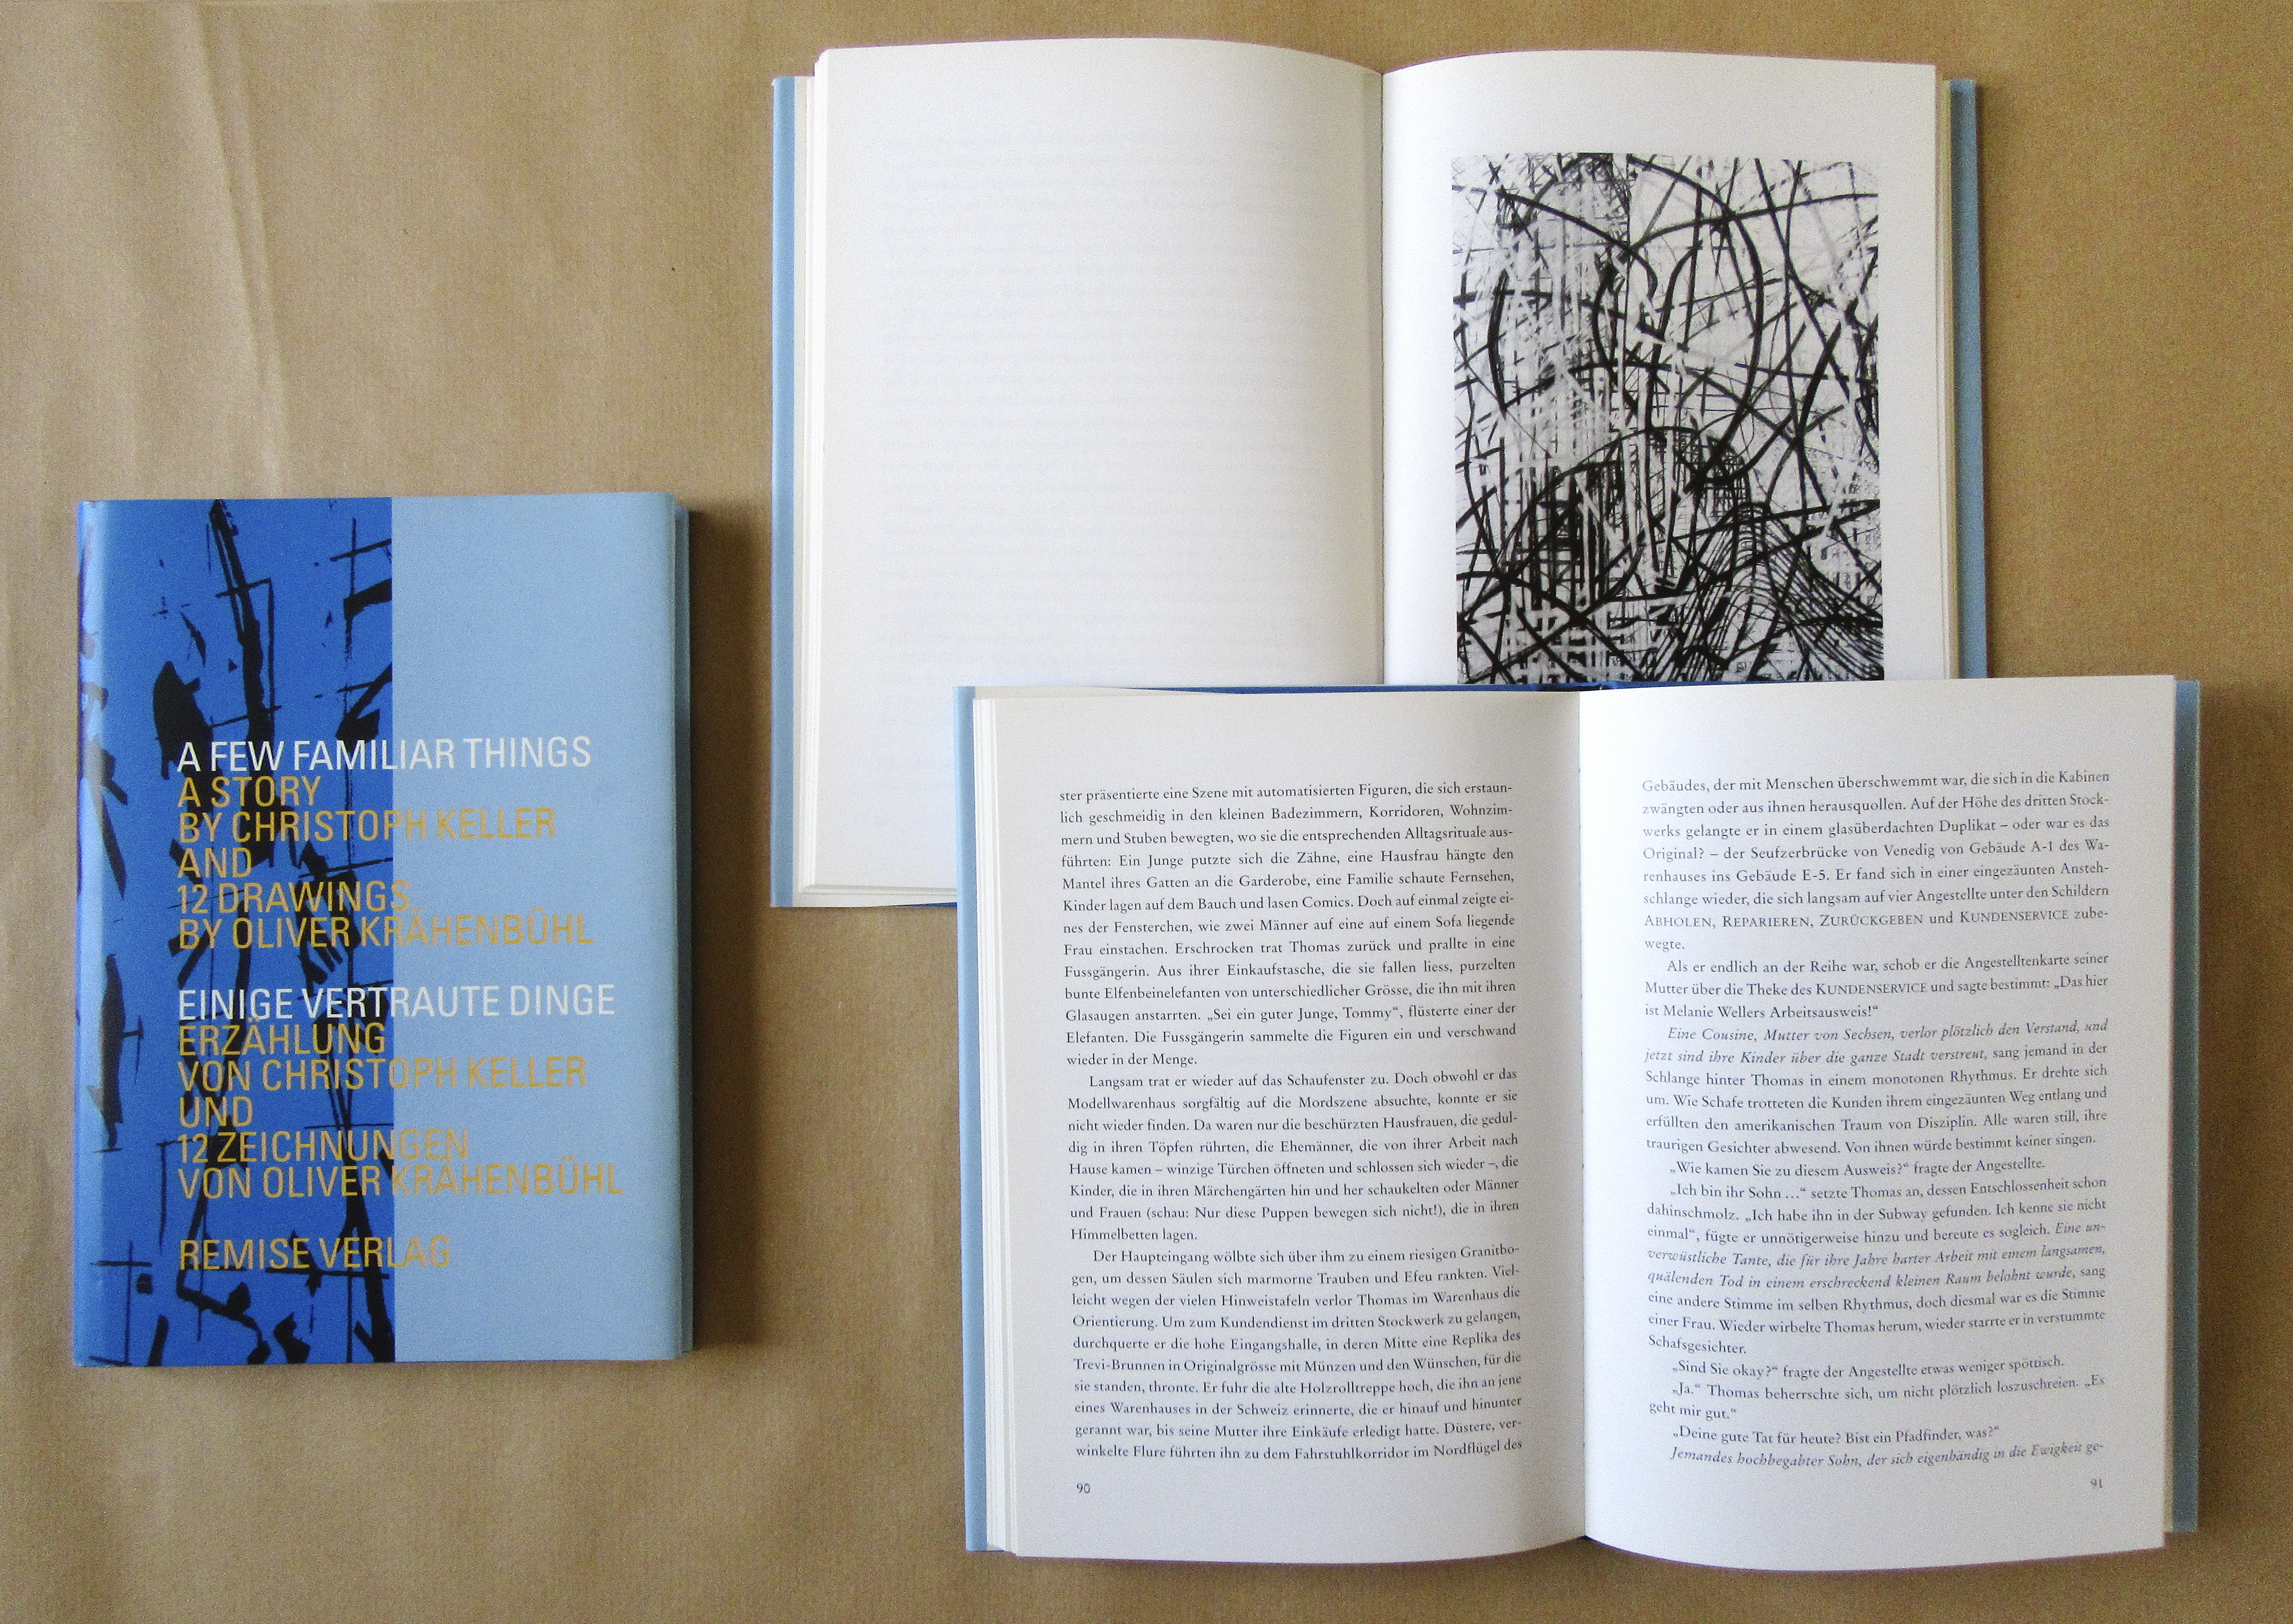 Abbildung: A Few Familiar Things / Einige vertraute Dinge, Erzählung von Christoph Keller und 12 Zeichnungen von Oliver Krähenbühl